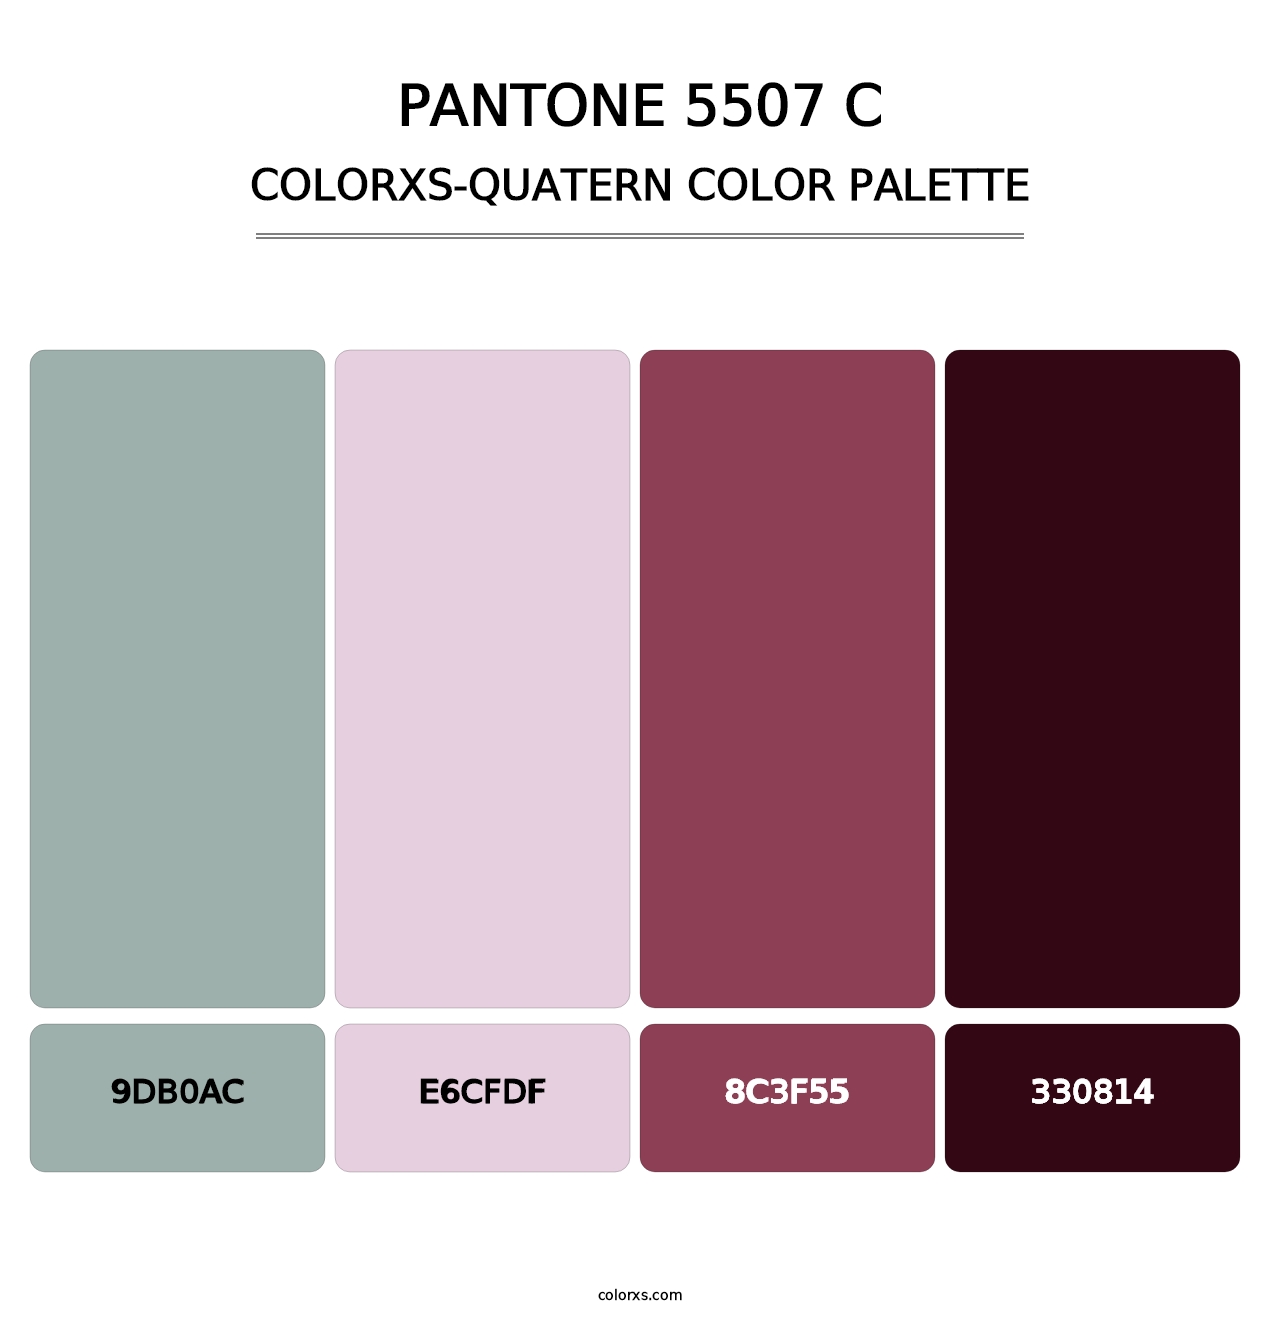 PANTONE 5507 C - Colorxs Quatern Palette